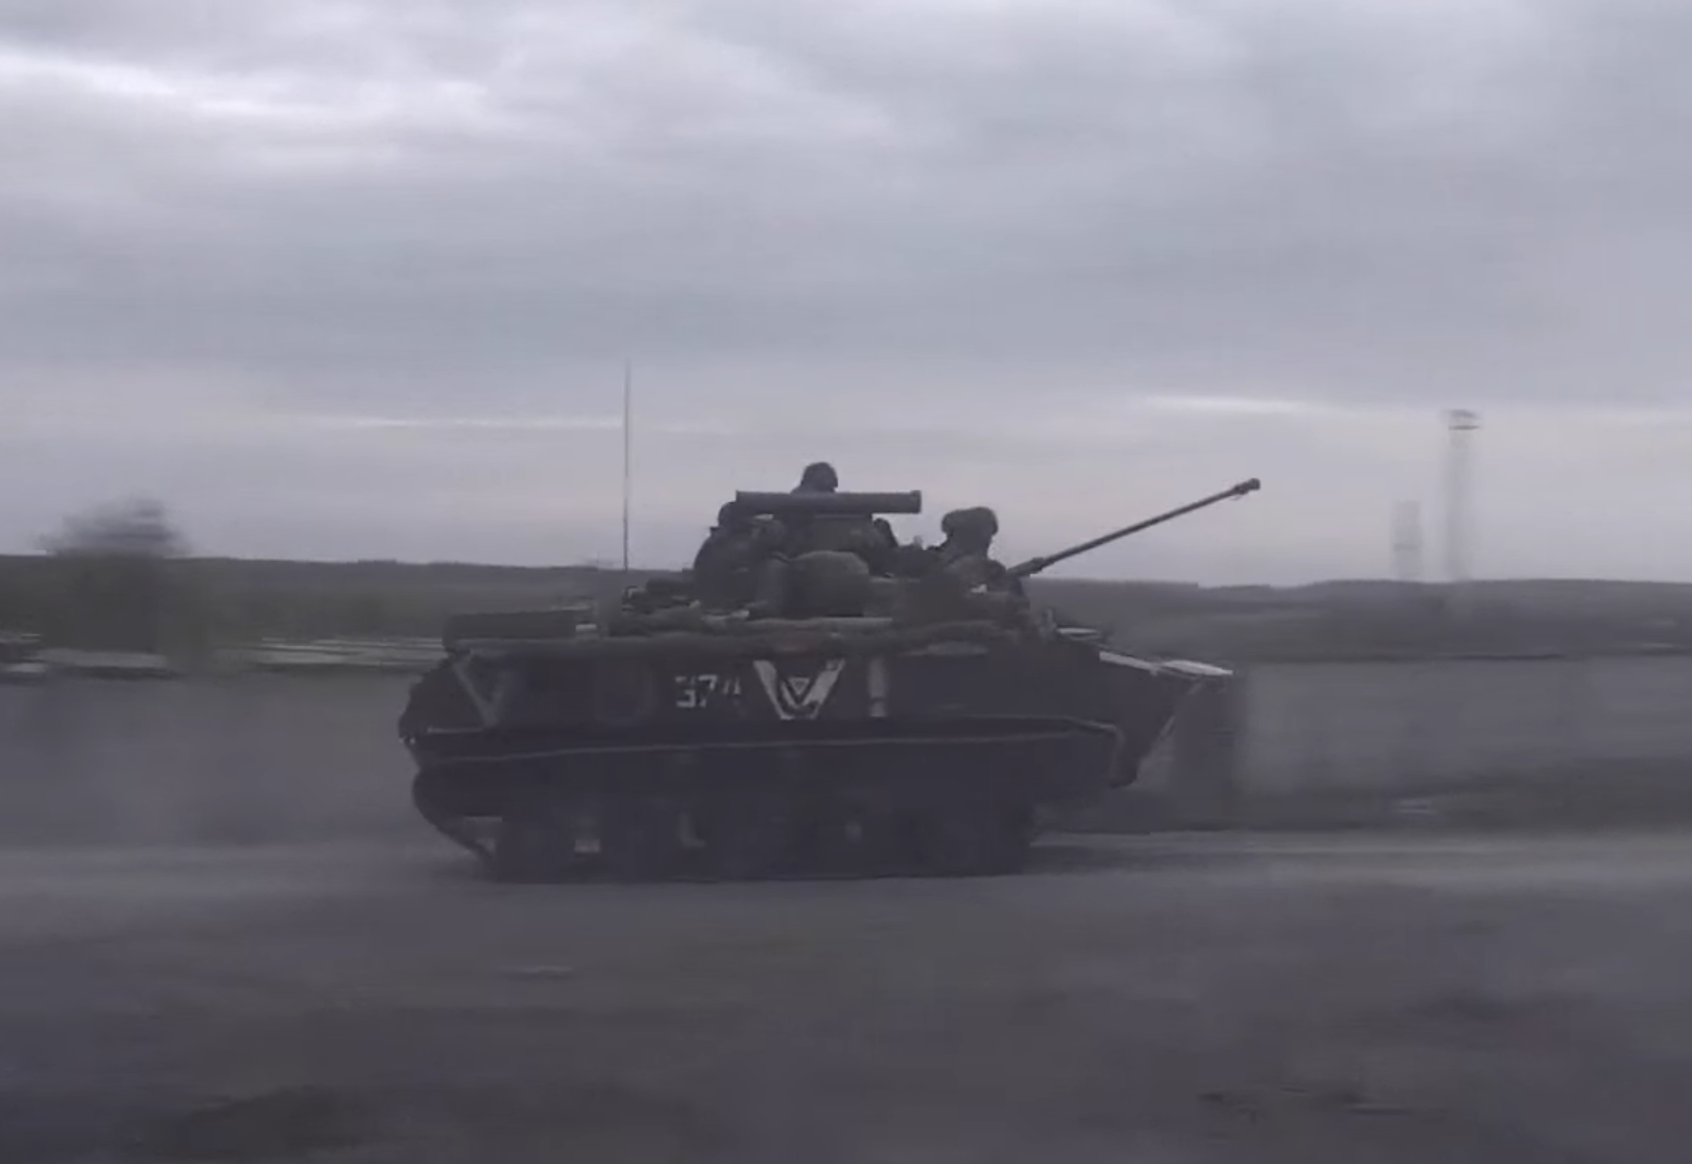 俄国防部2日公布俄军空降兵部队在乌执行作战任务时发起进攻的视频截图